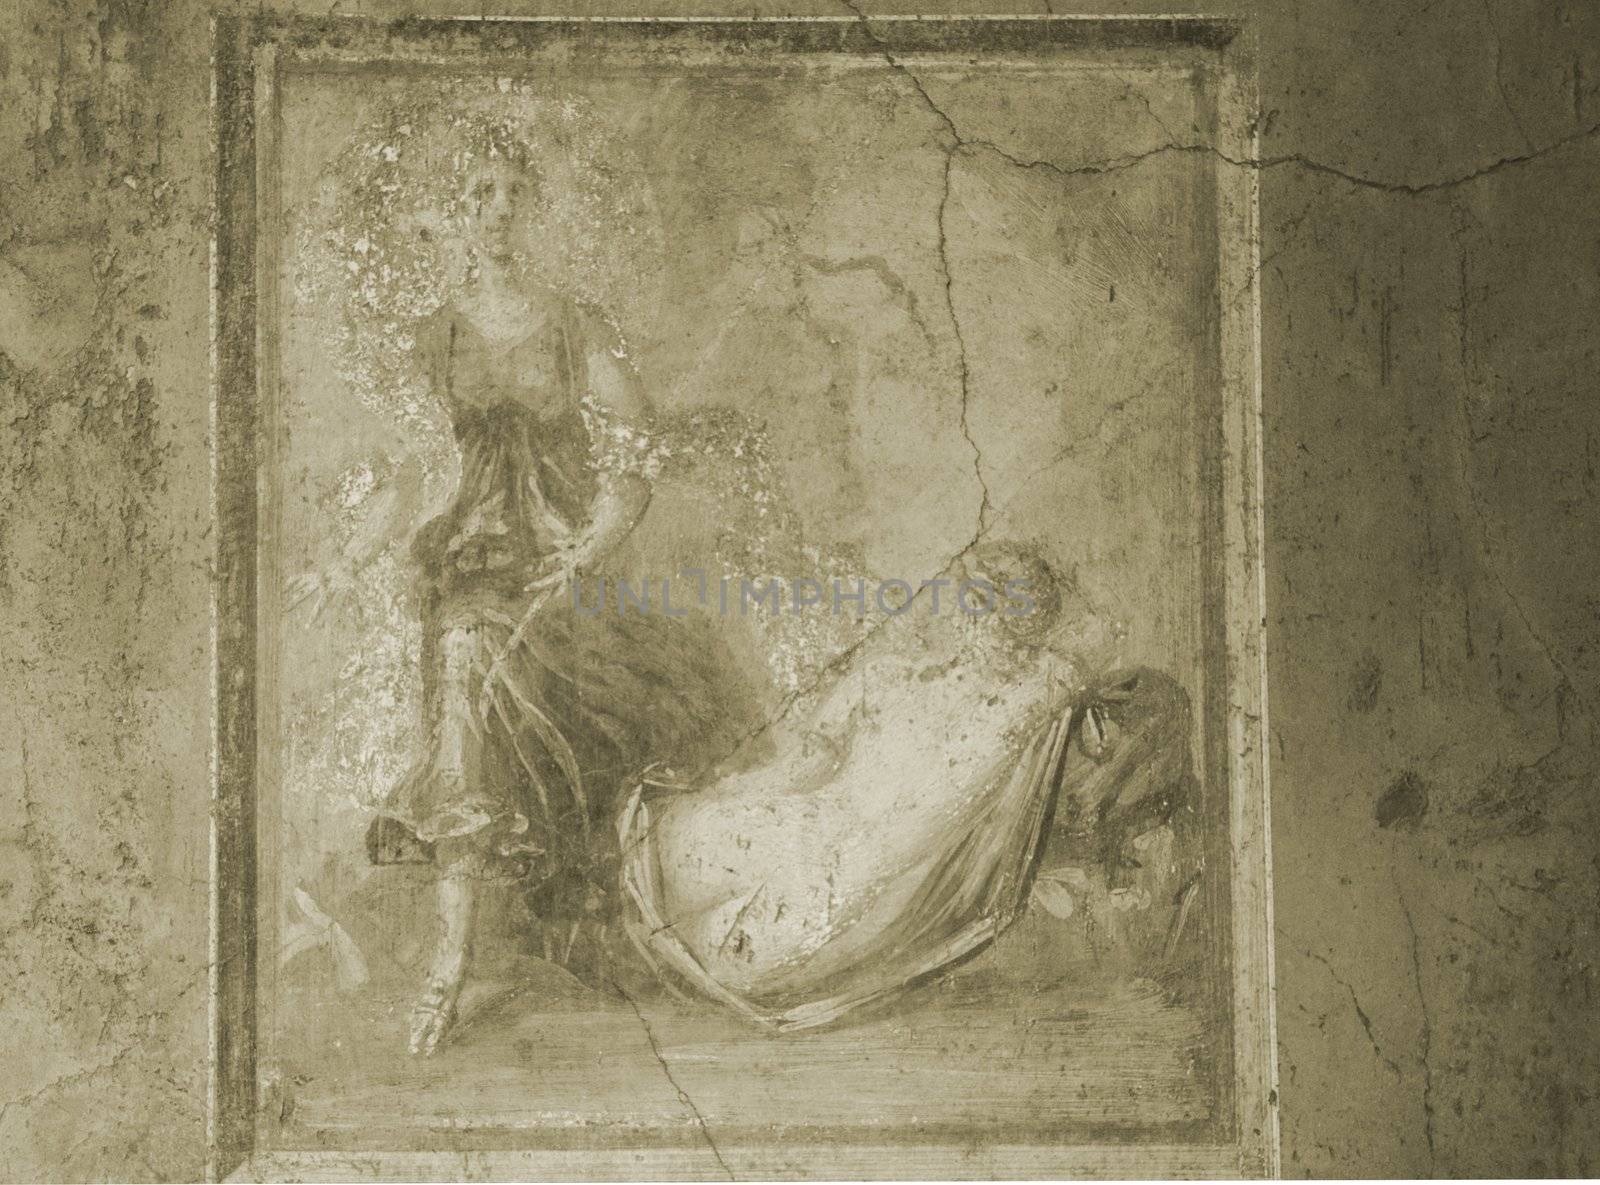 Pompeii Fresco in Sepia by jasony00